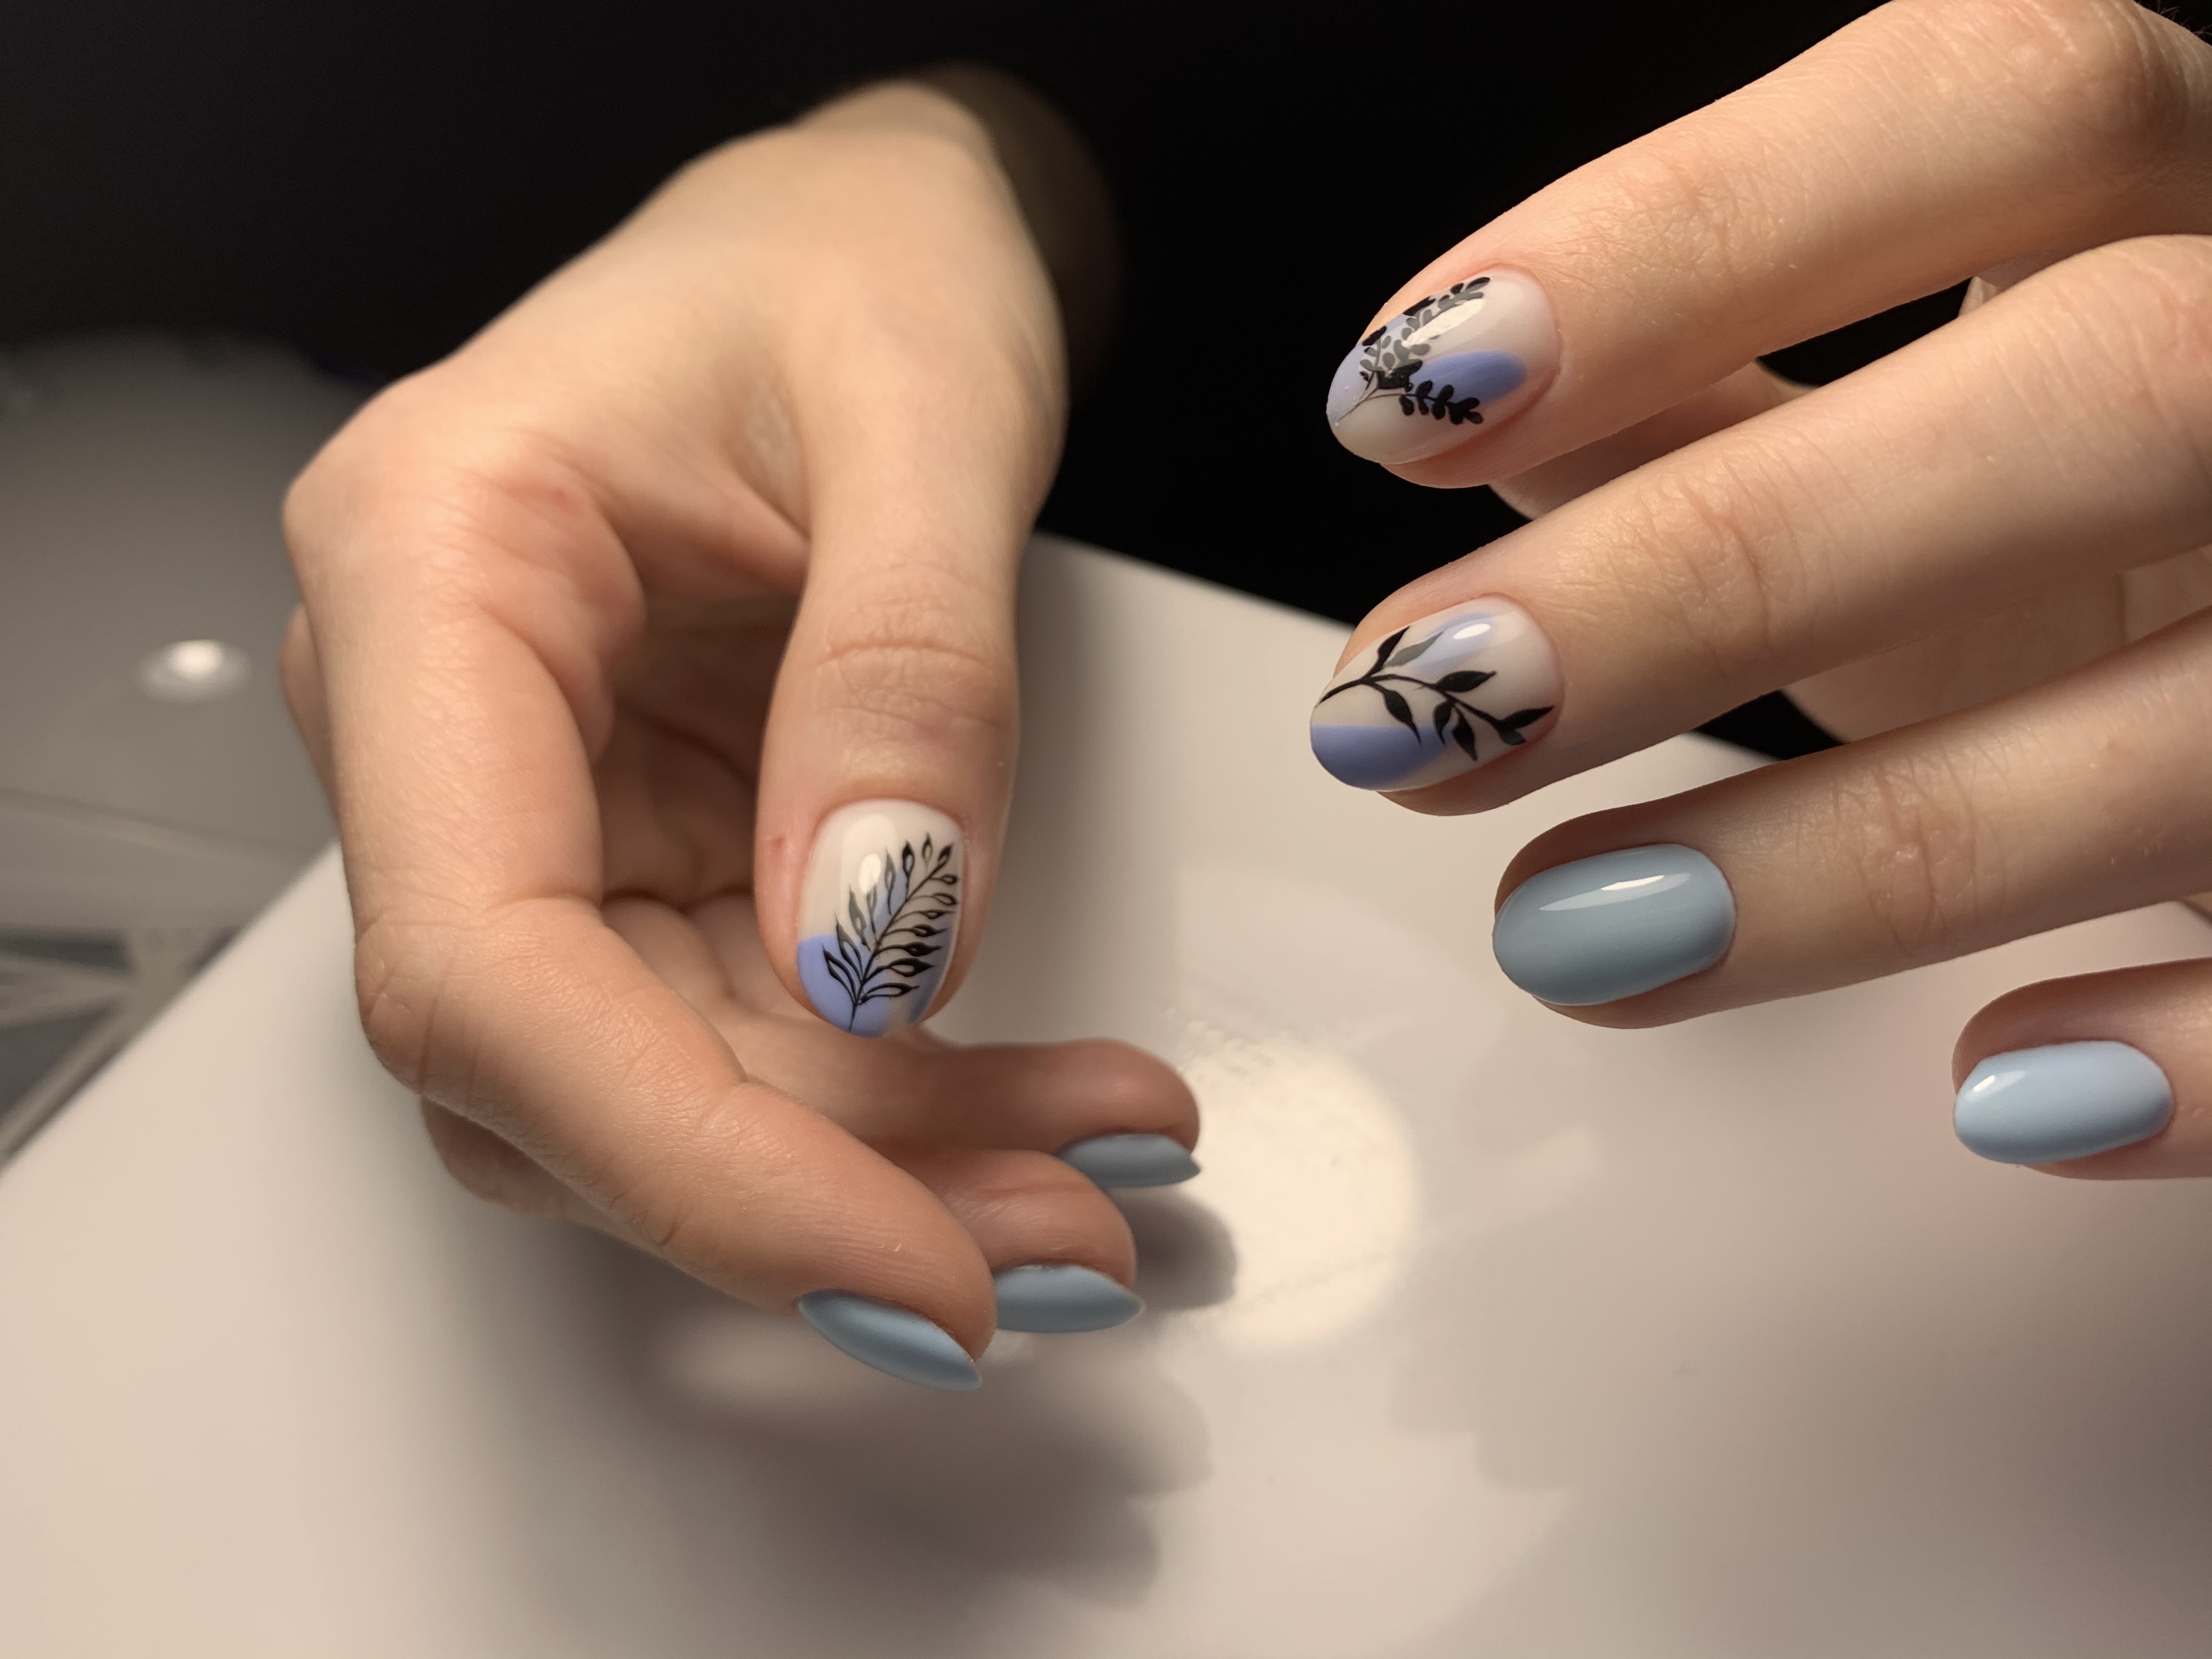 Маникюр с растительными слайдерами в голубом цвете на короткие ногти.